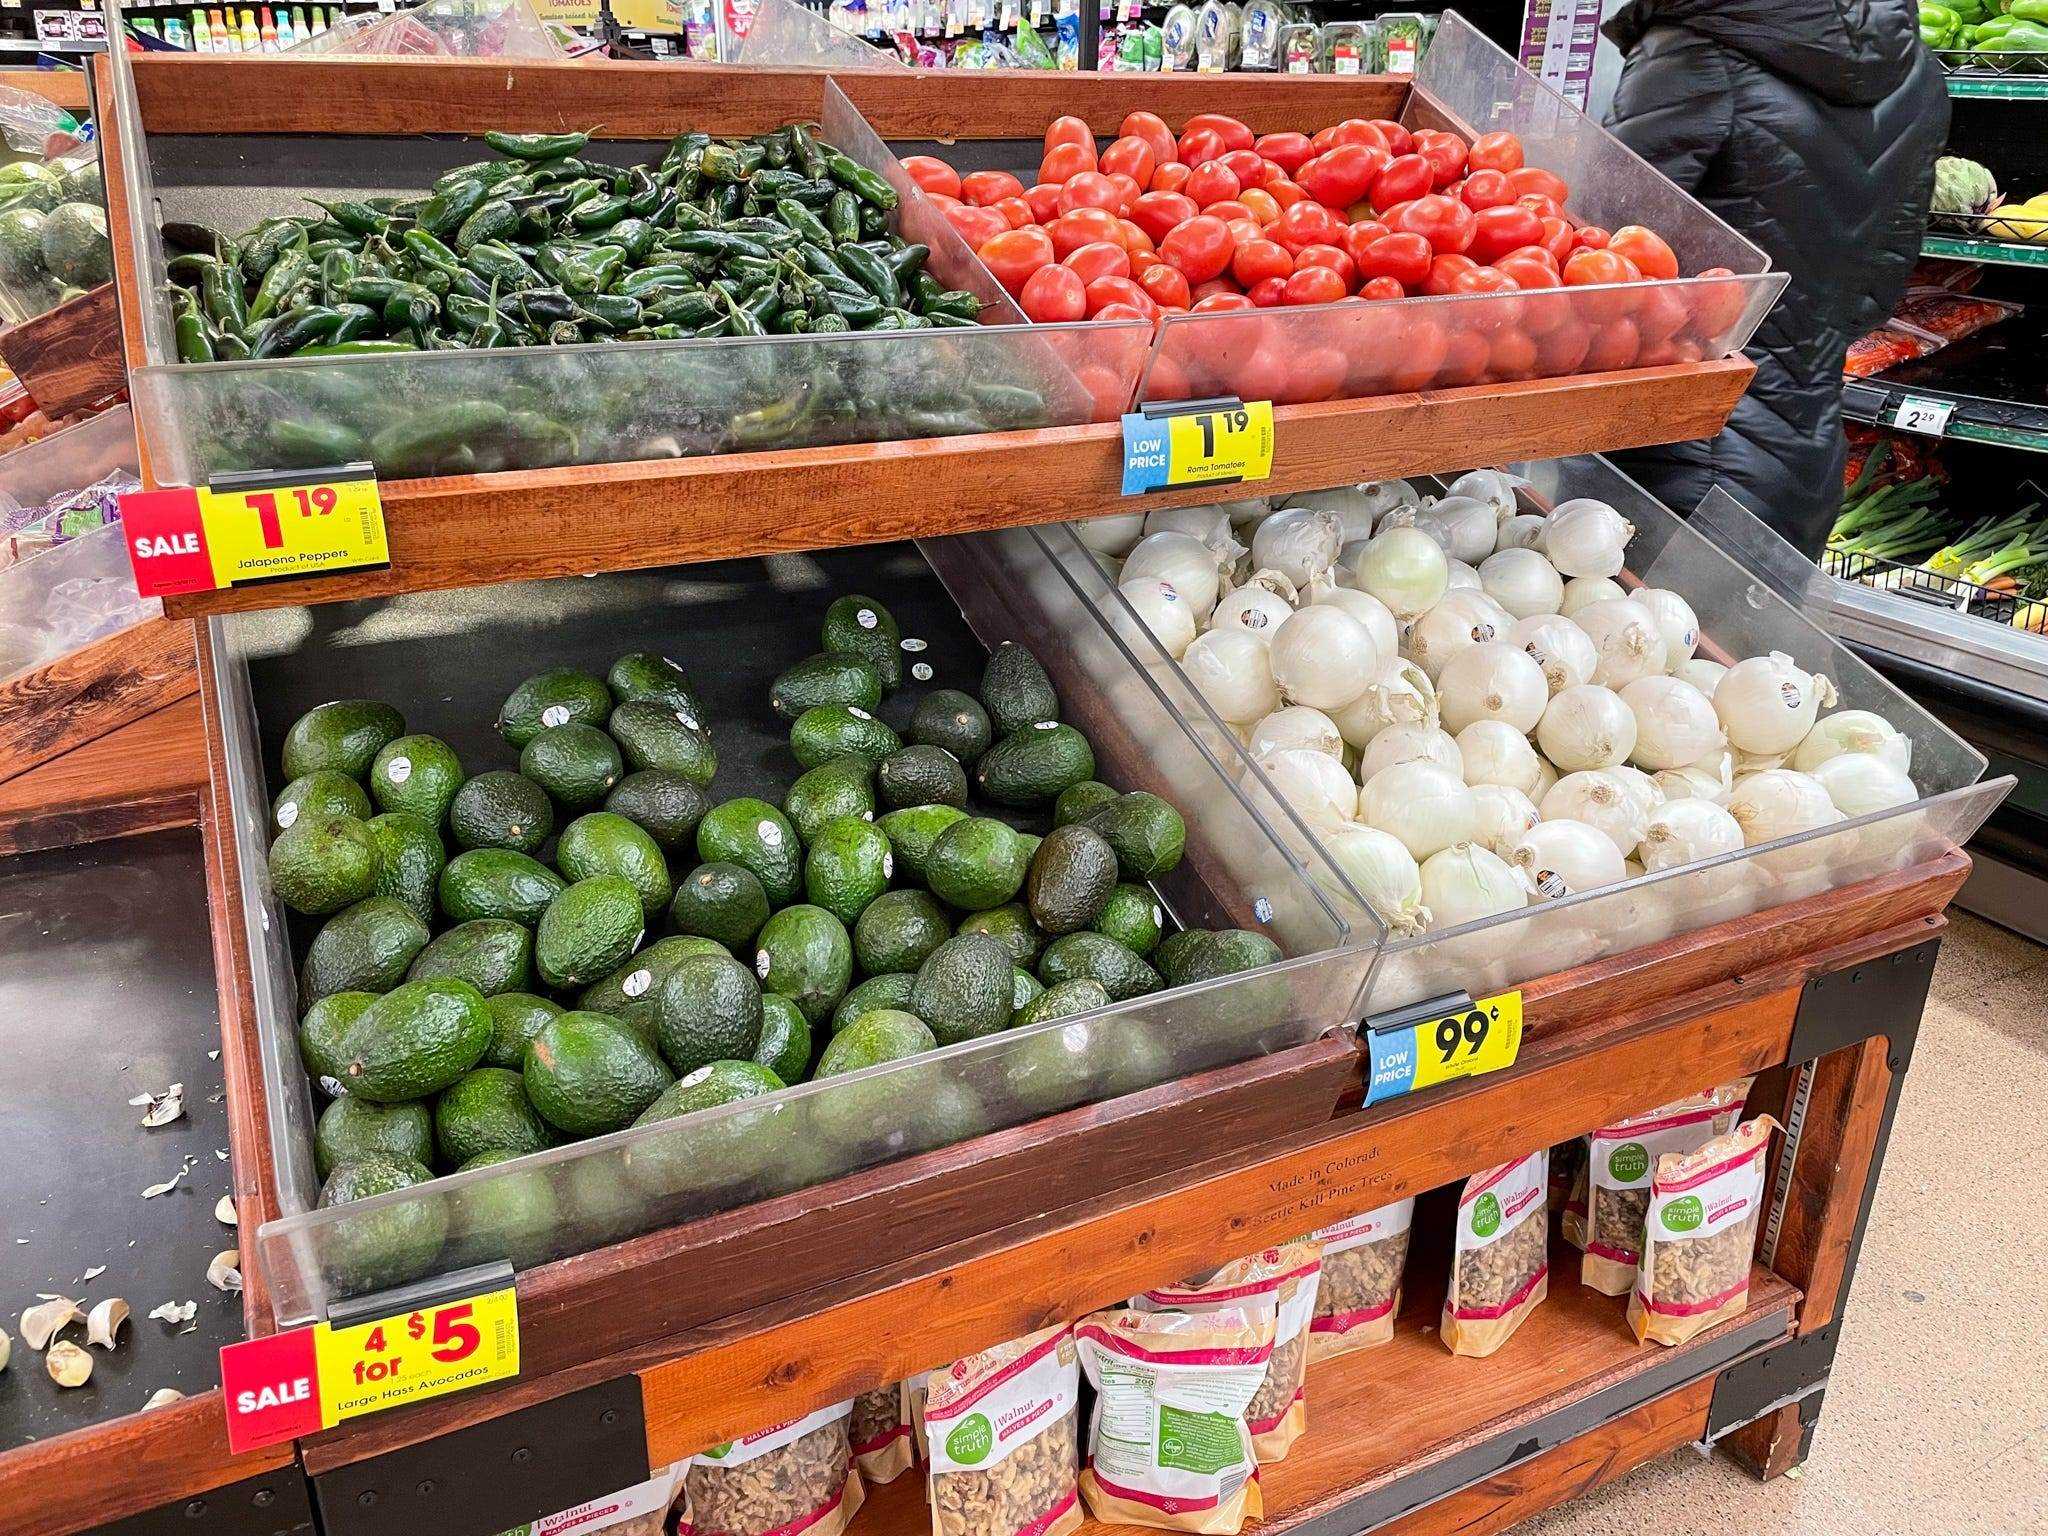 Die Preise für Produkte in Aspens Lebensmittelgeschäft waren ähnlich wie in Denver.